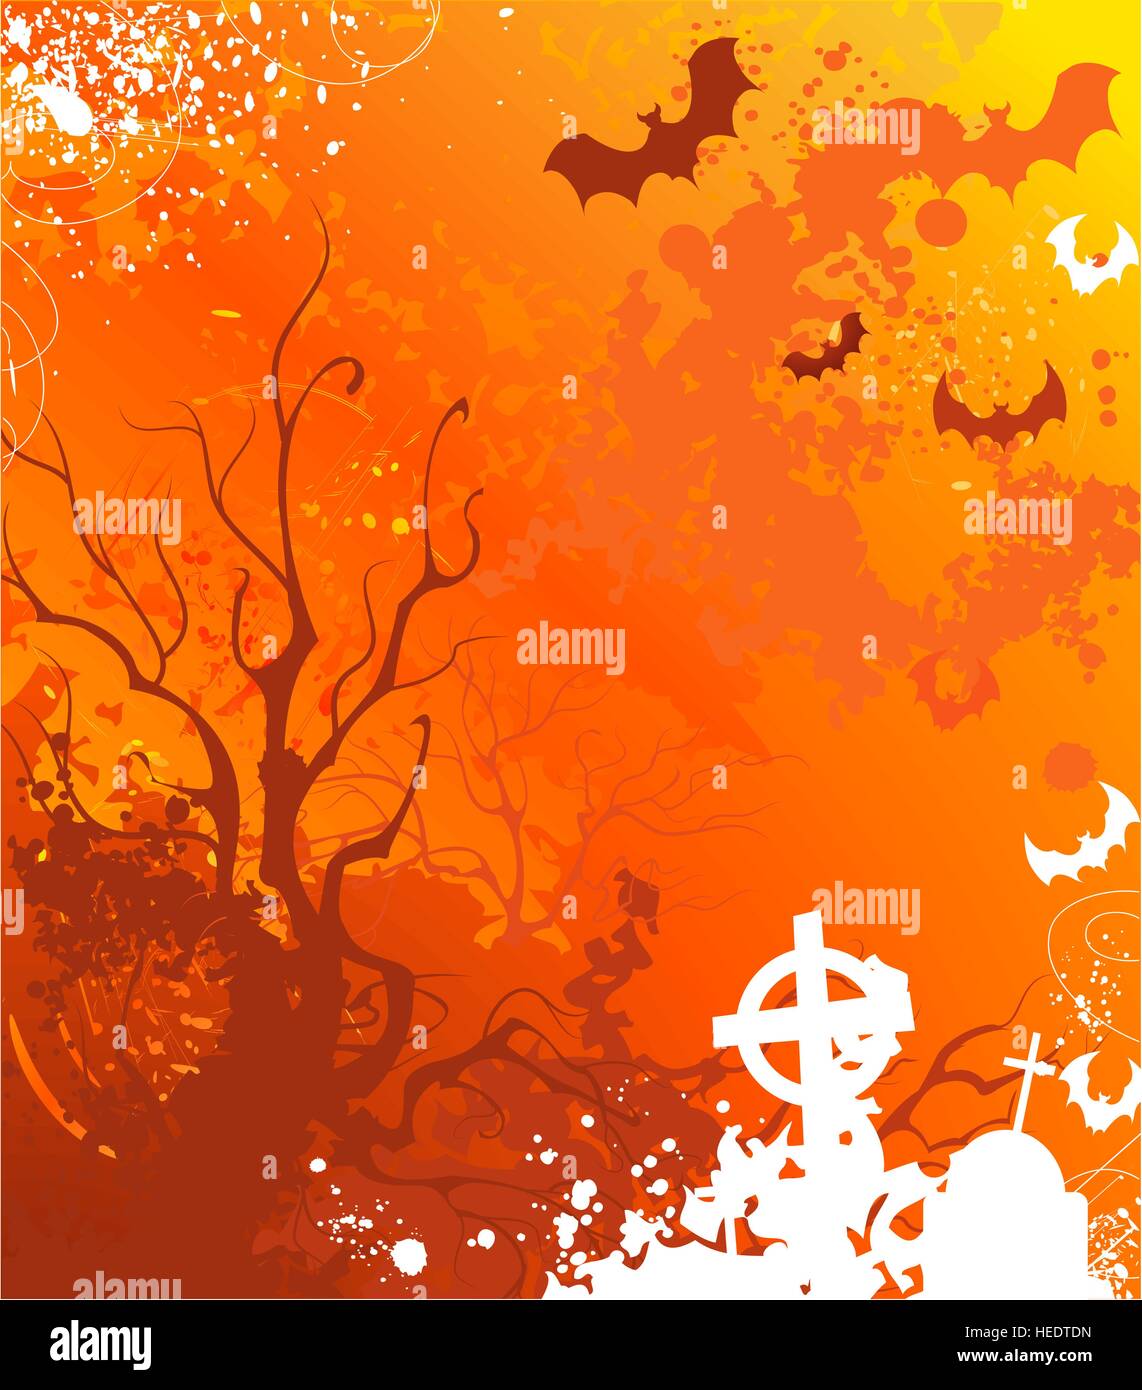 Contexte à l'halloween avec des arbres desséchés et tombes abandonnées, peint peinture orange vif. Illustration de Vecteur